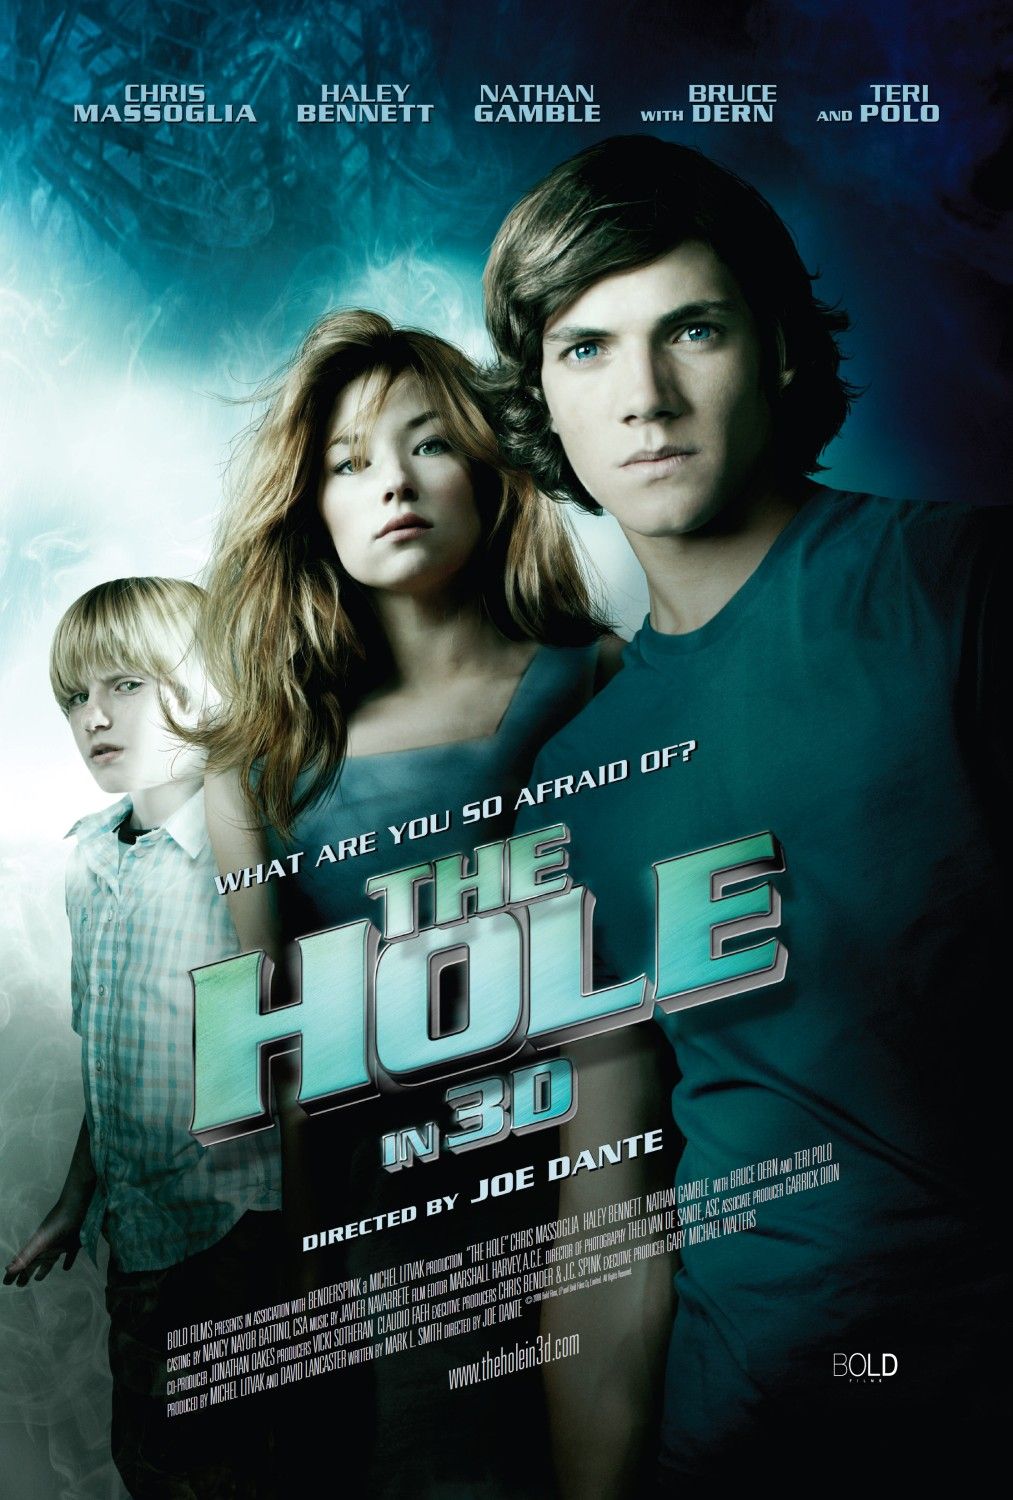 The Hole-áá¡ á¡á£á áááá¡ á¨ááááá